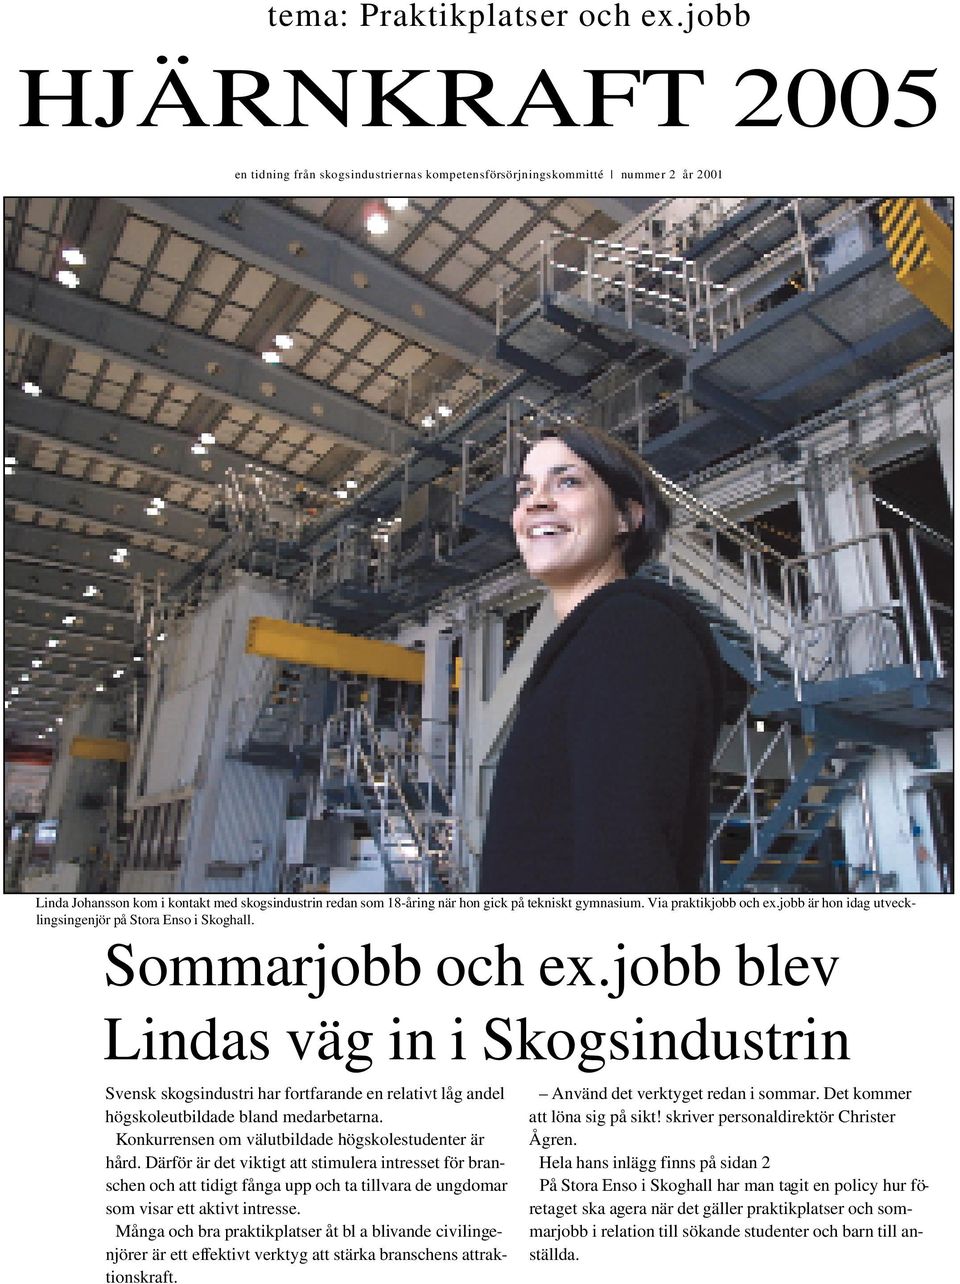 18-åring när hon gick på tekniskt gymnasium. Via praktikjobb och ex.jobb är hon idag utvecklingsingenjör på Stora Enso i Skoghall. Sommarjobb och ex.